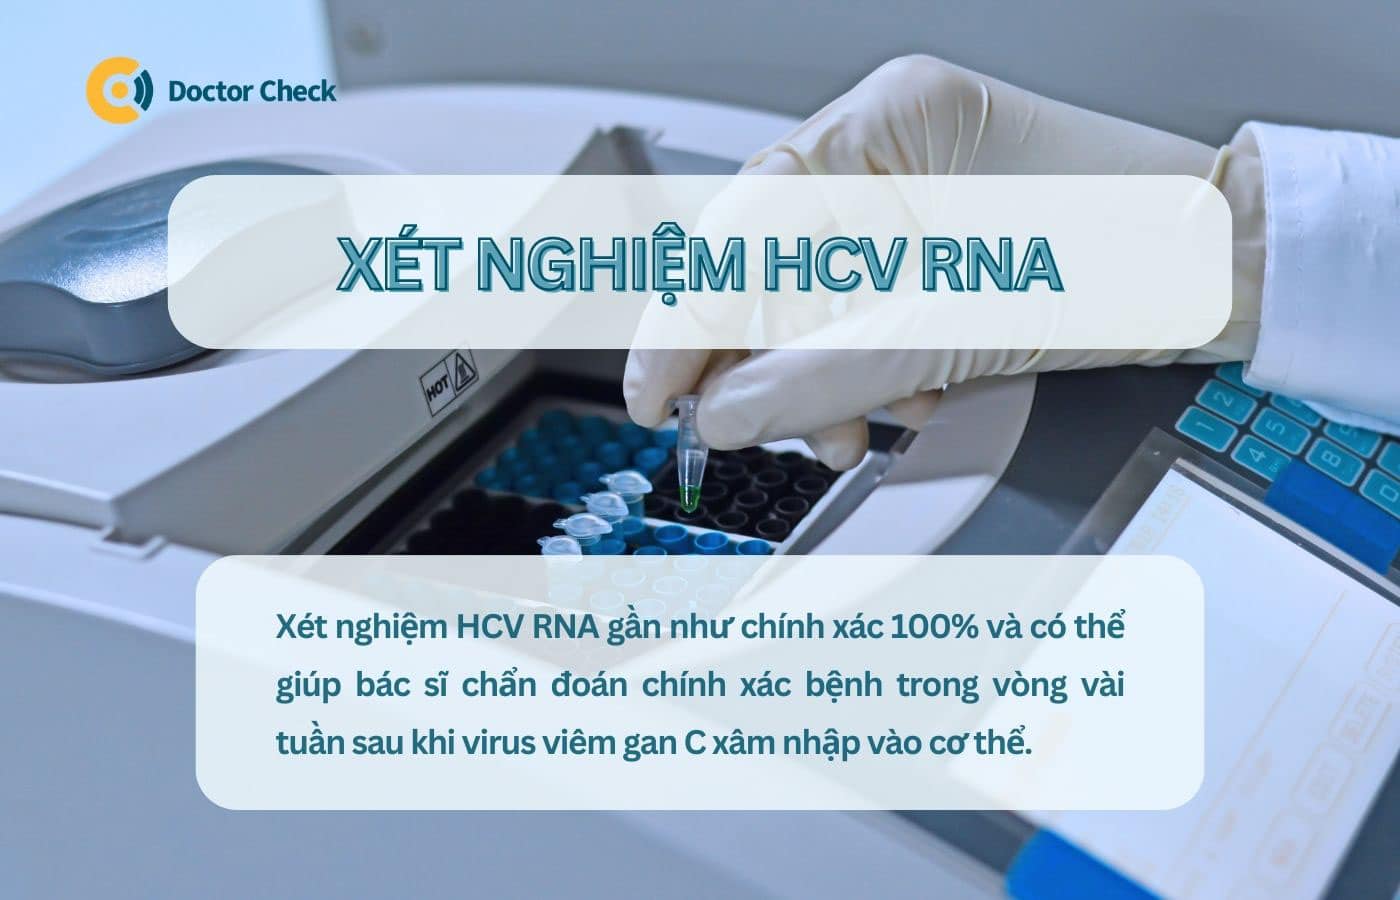 Xét nghiệm HCV RNA